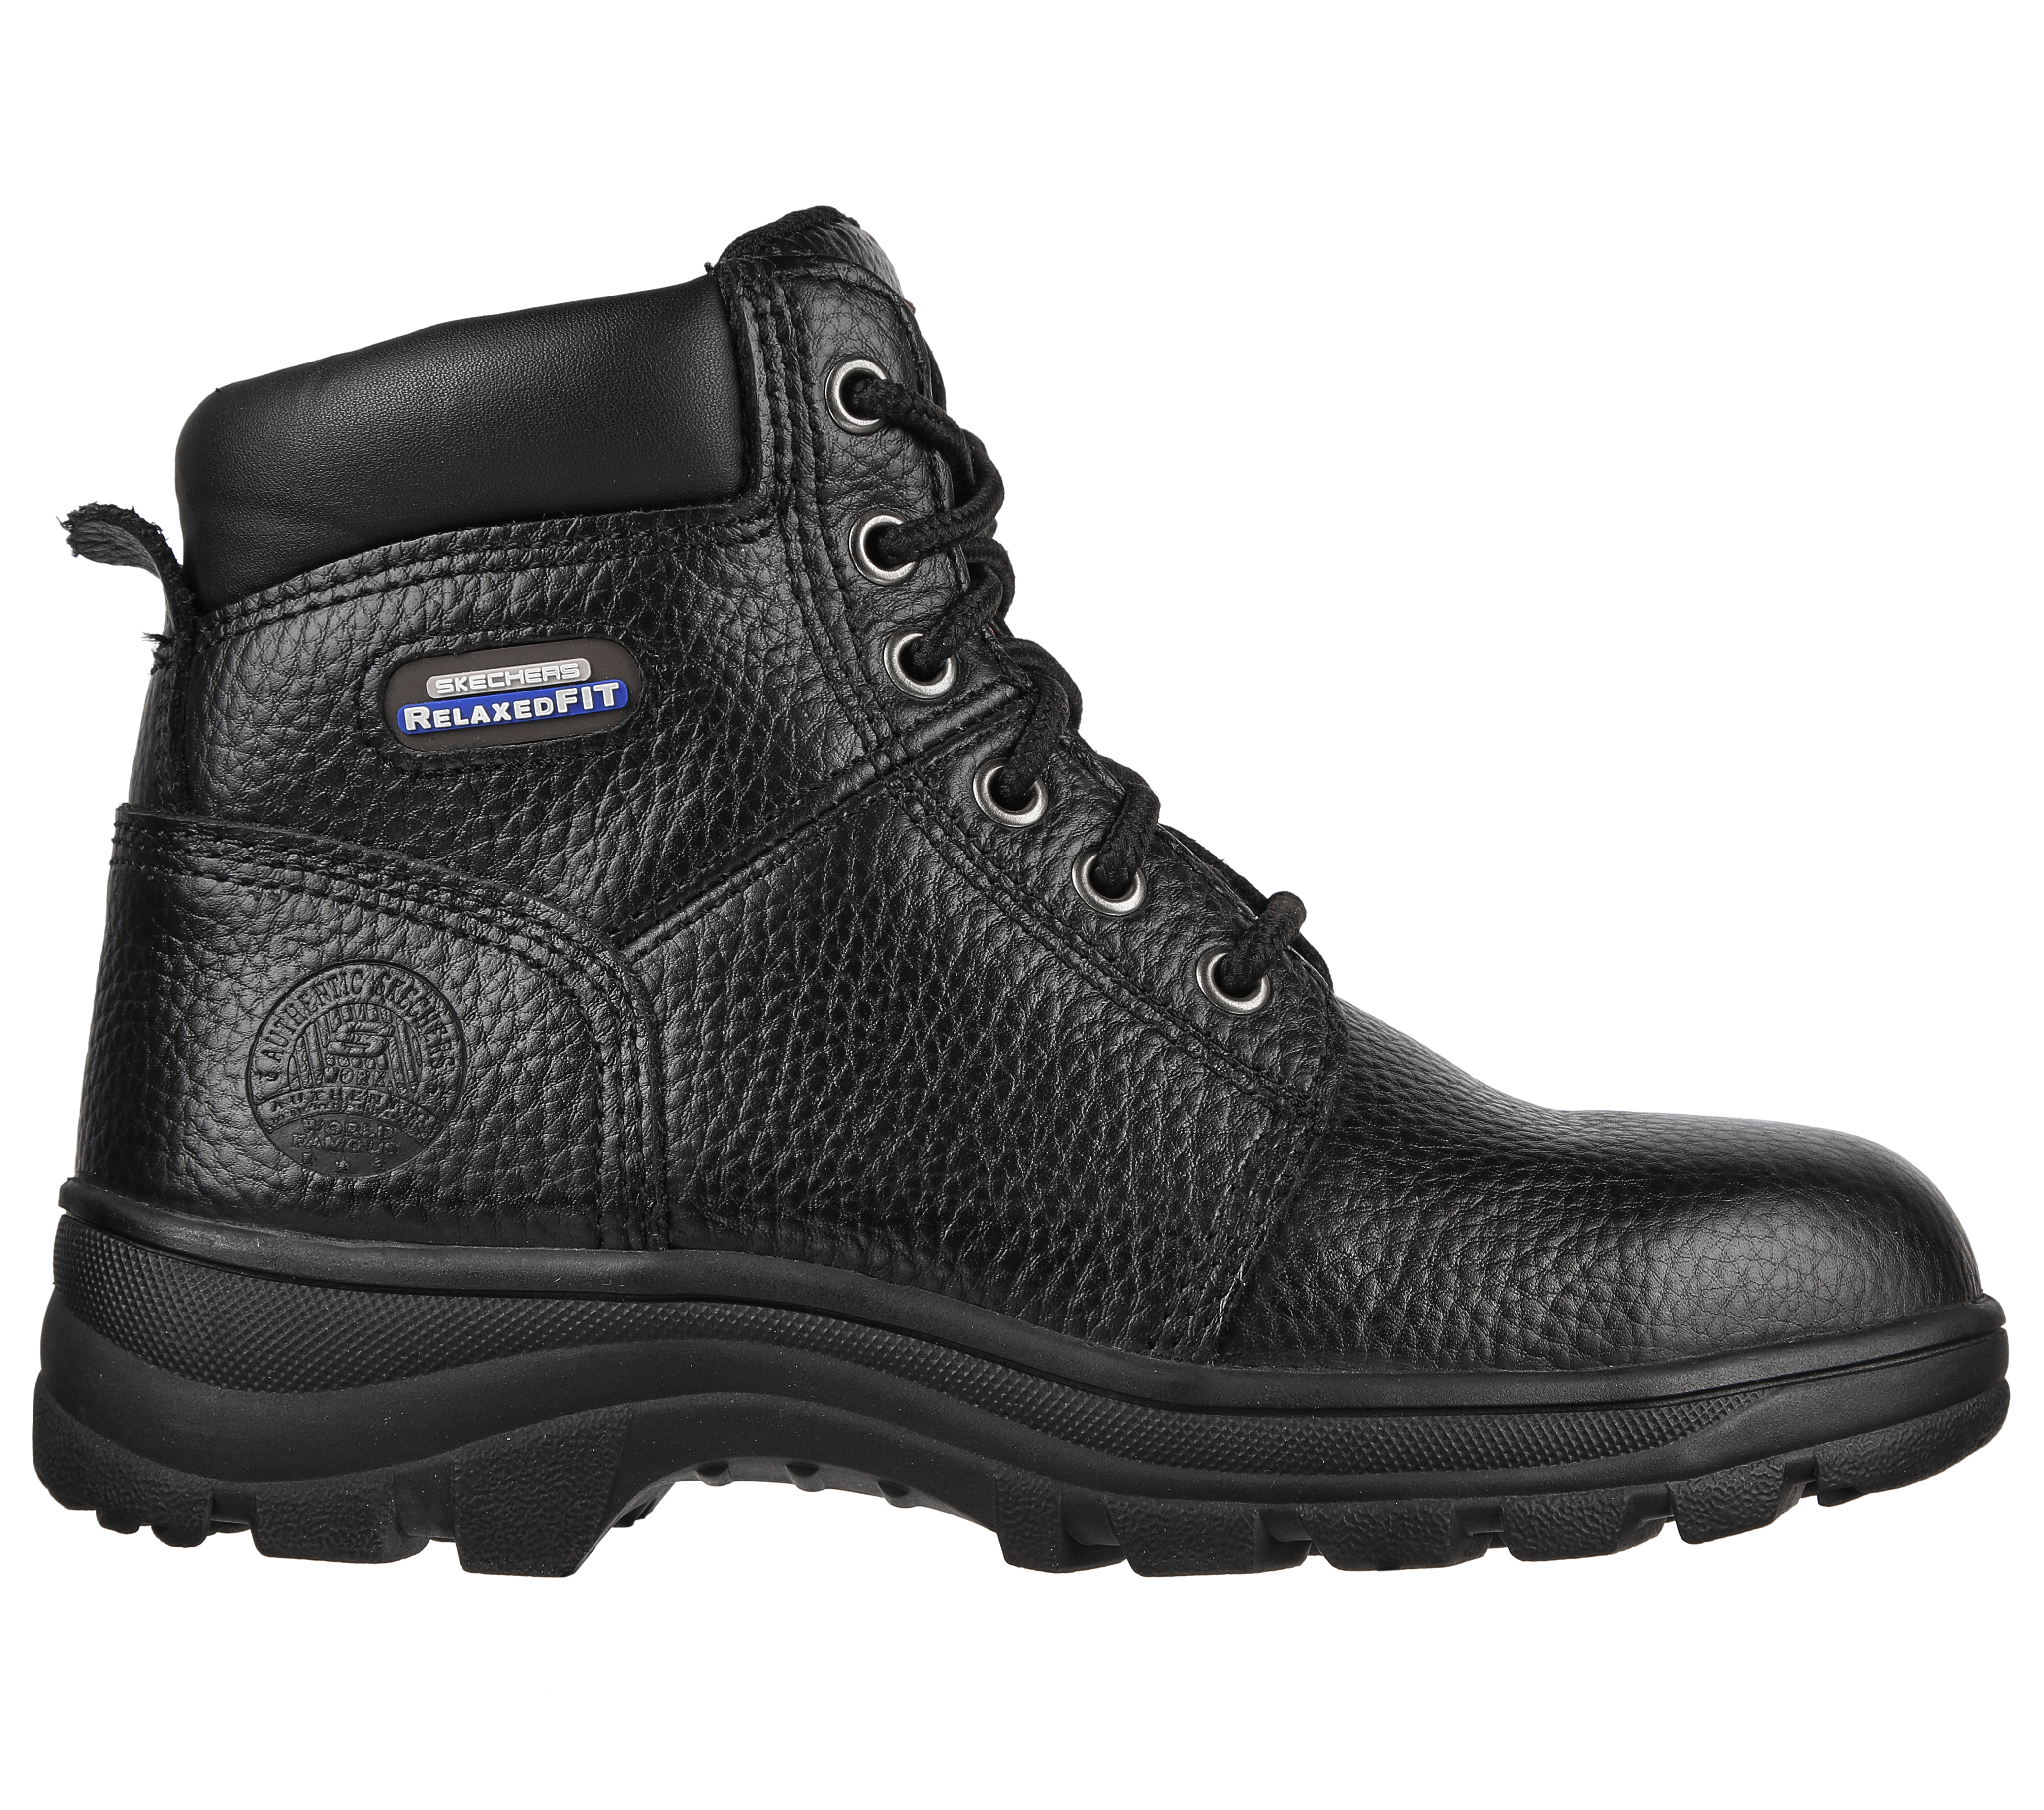 skechers black work boots